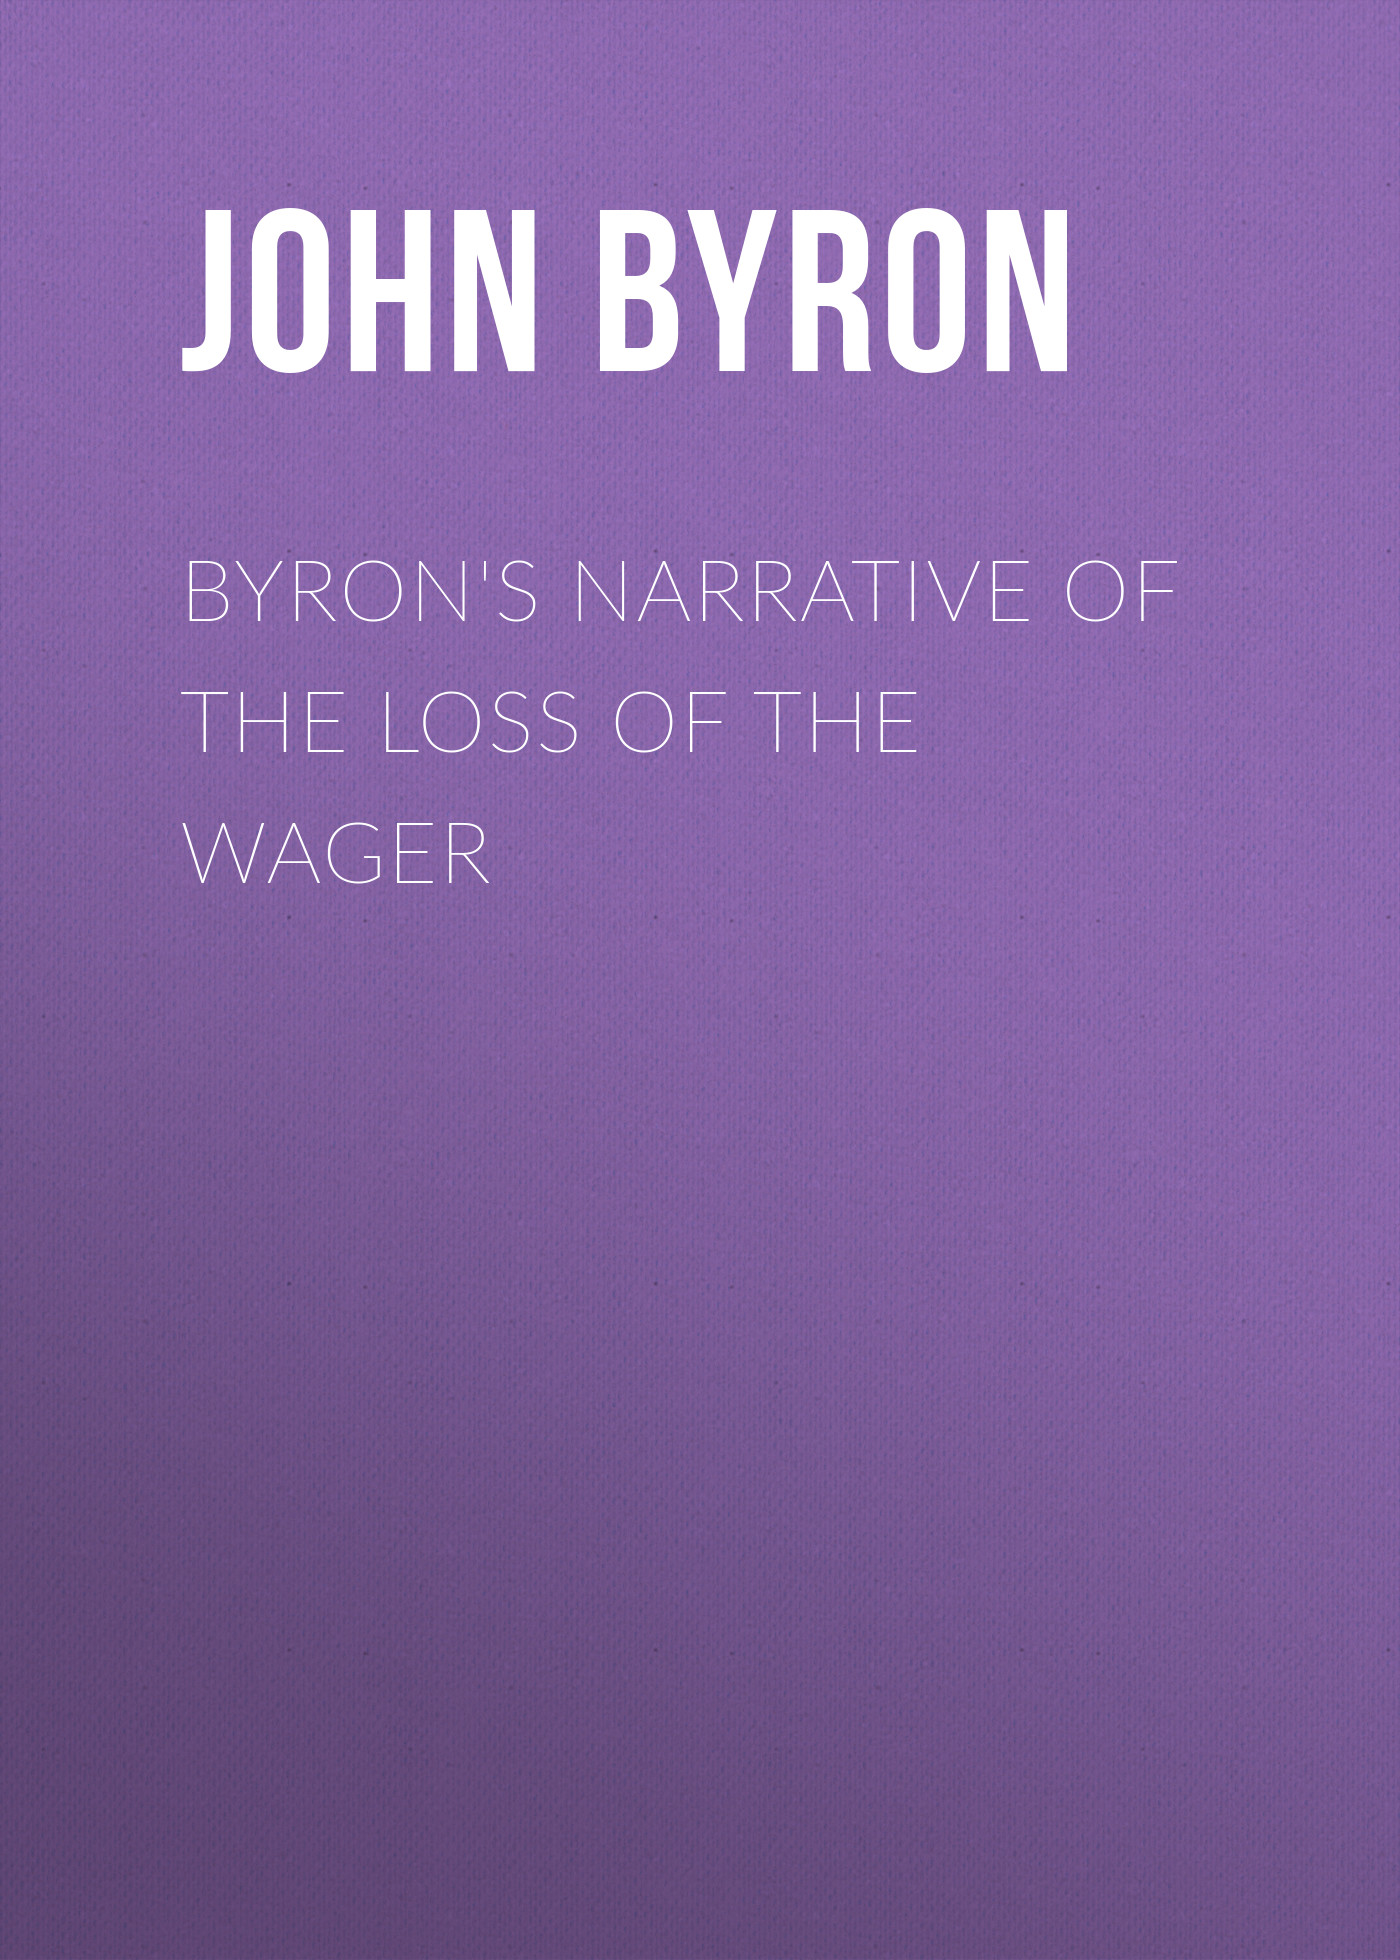 Книга Byron's Narrative of the Loss of the Wager из серии , созданная John Byron, может относится к жанру Зарубежная старинная литература, Зарубежная классика. Стоимость электронной книги Byron's Narrative of the Loss of the Wager с идентификатором 24165404 составляет 0 руб.